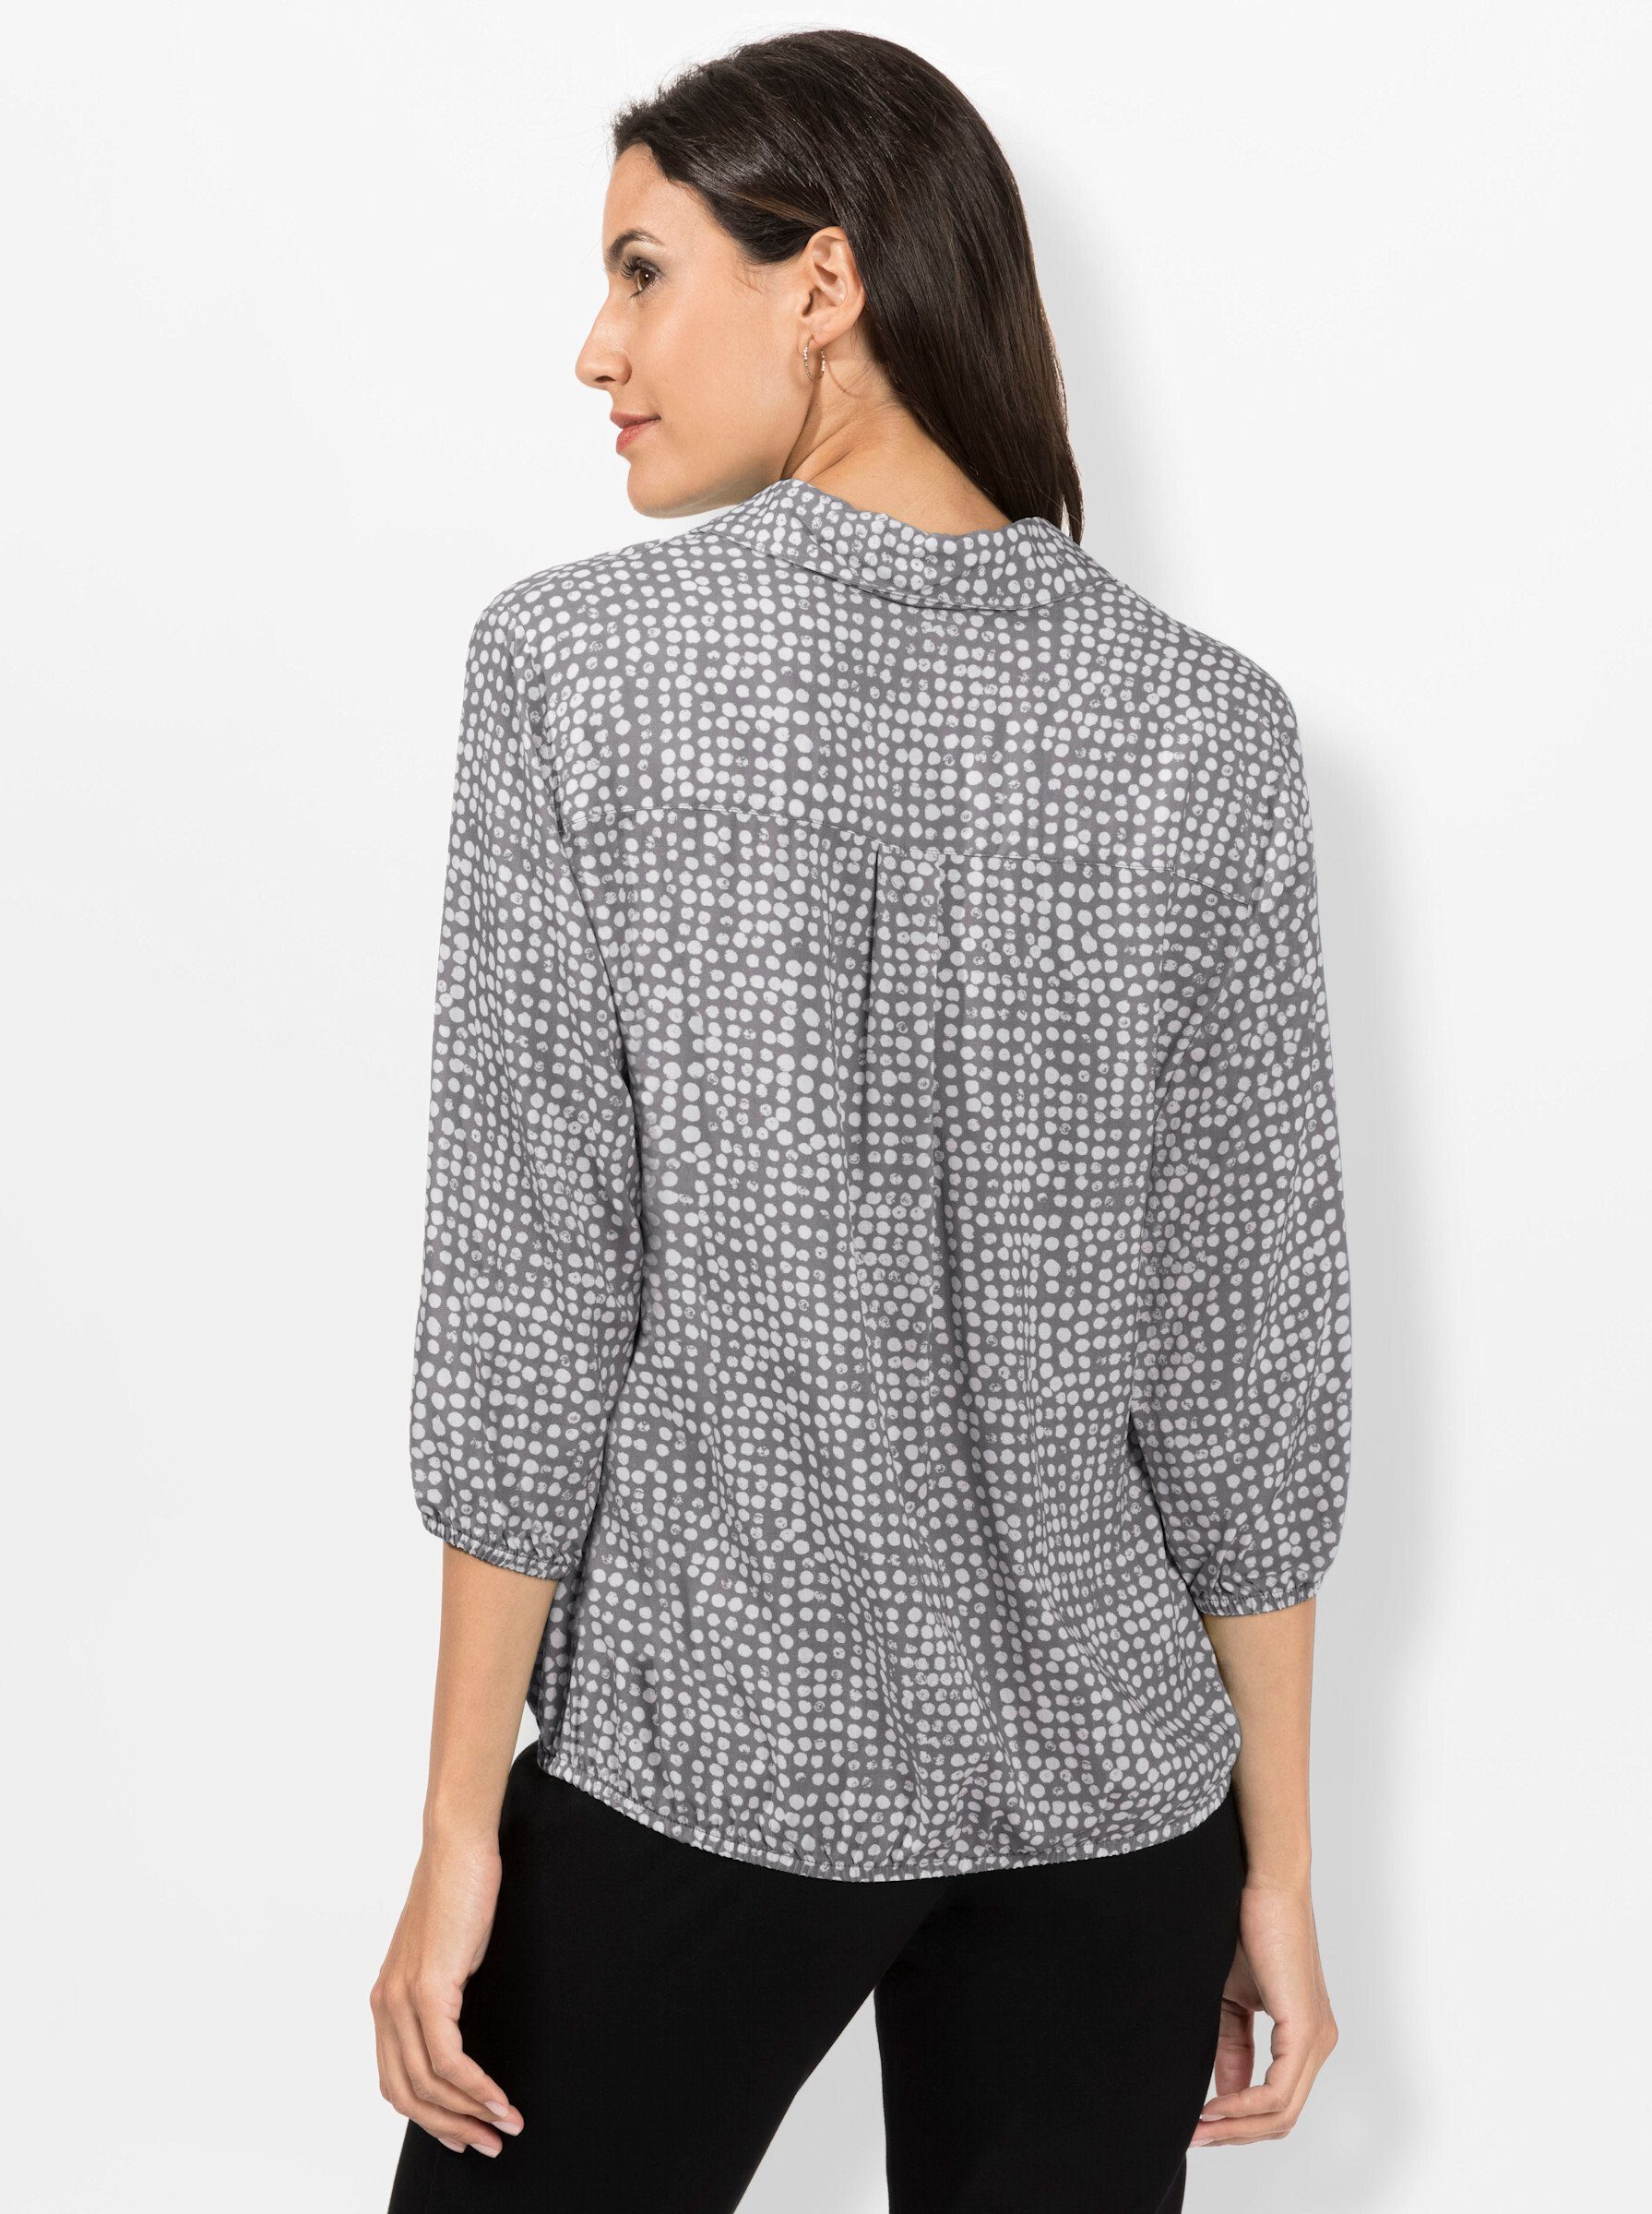 grau-weiß-bedruckt Bluse WEIDEN Klassische WITT